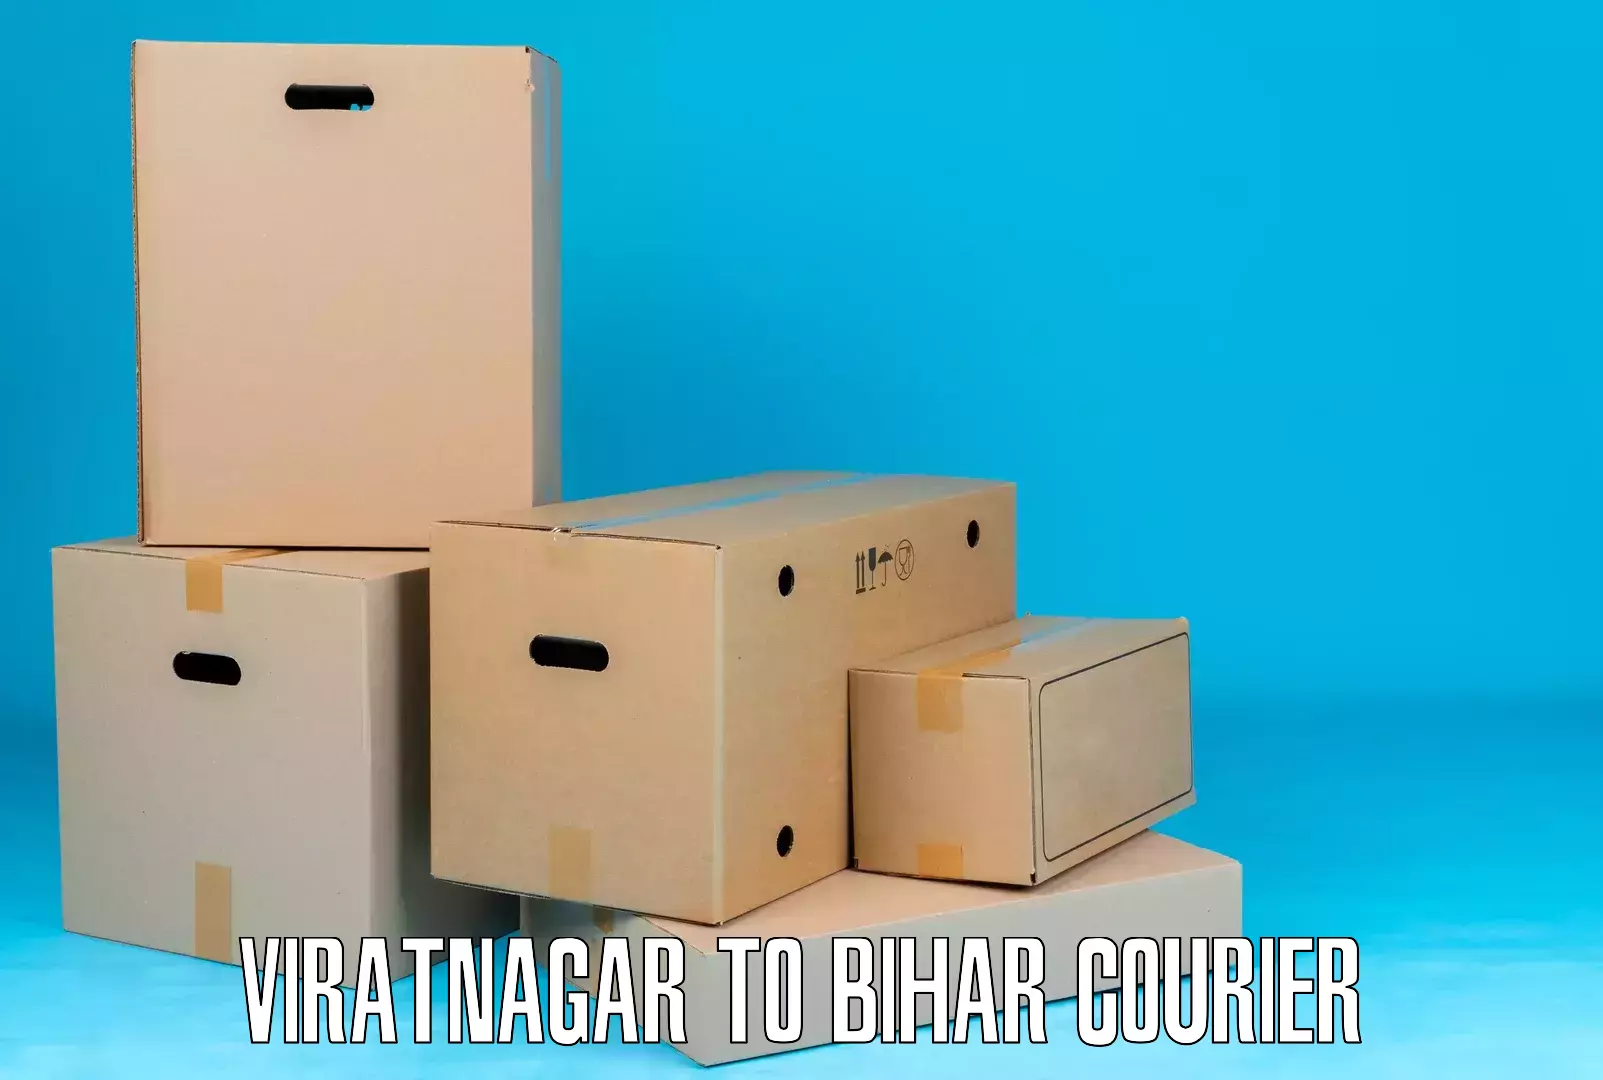 Short distance delivery Viratnagar to Hasanpura